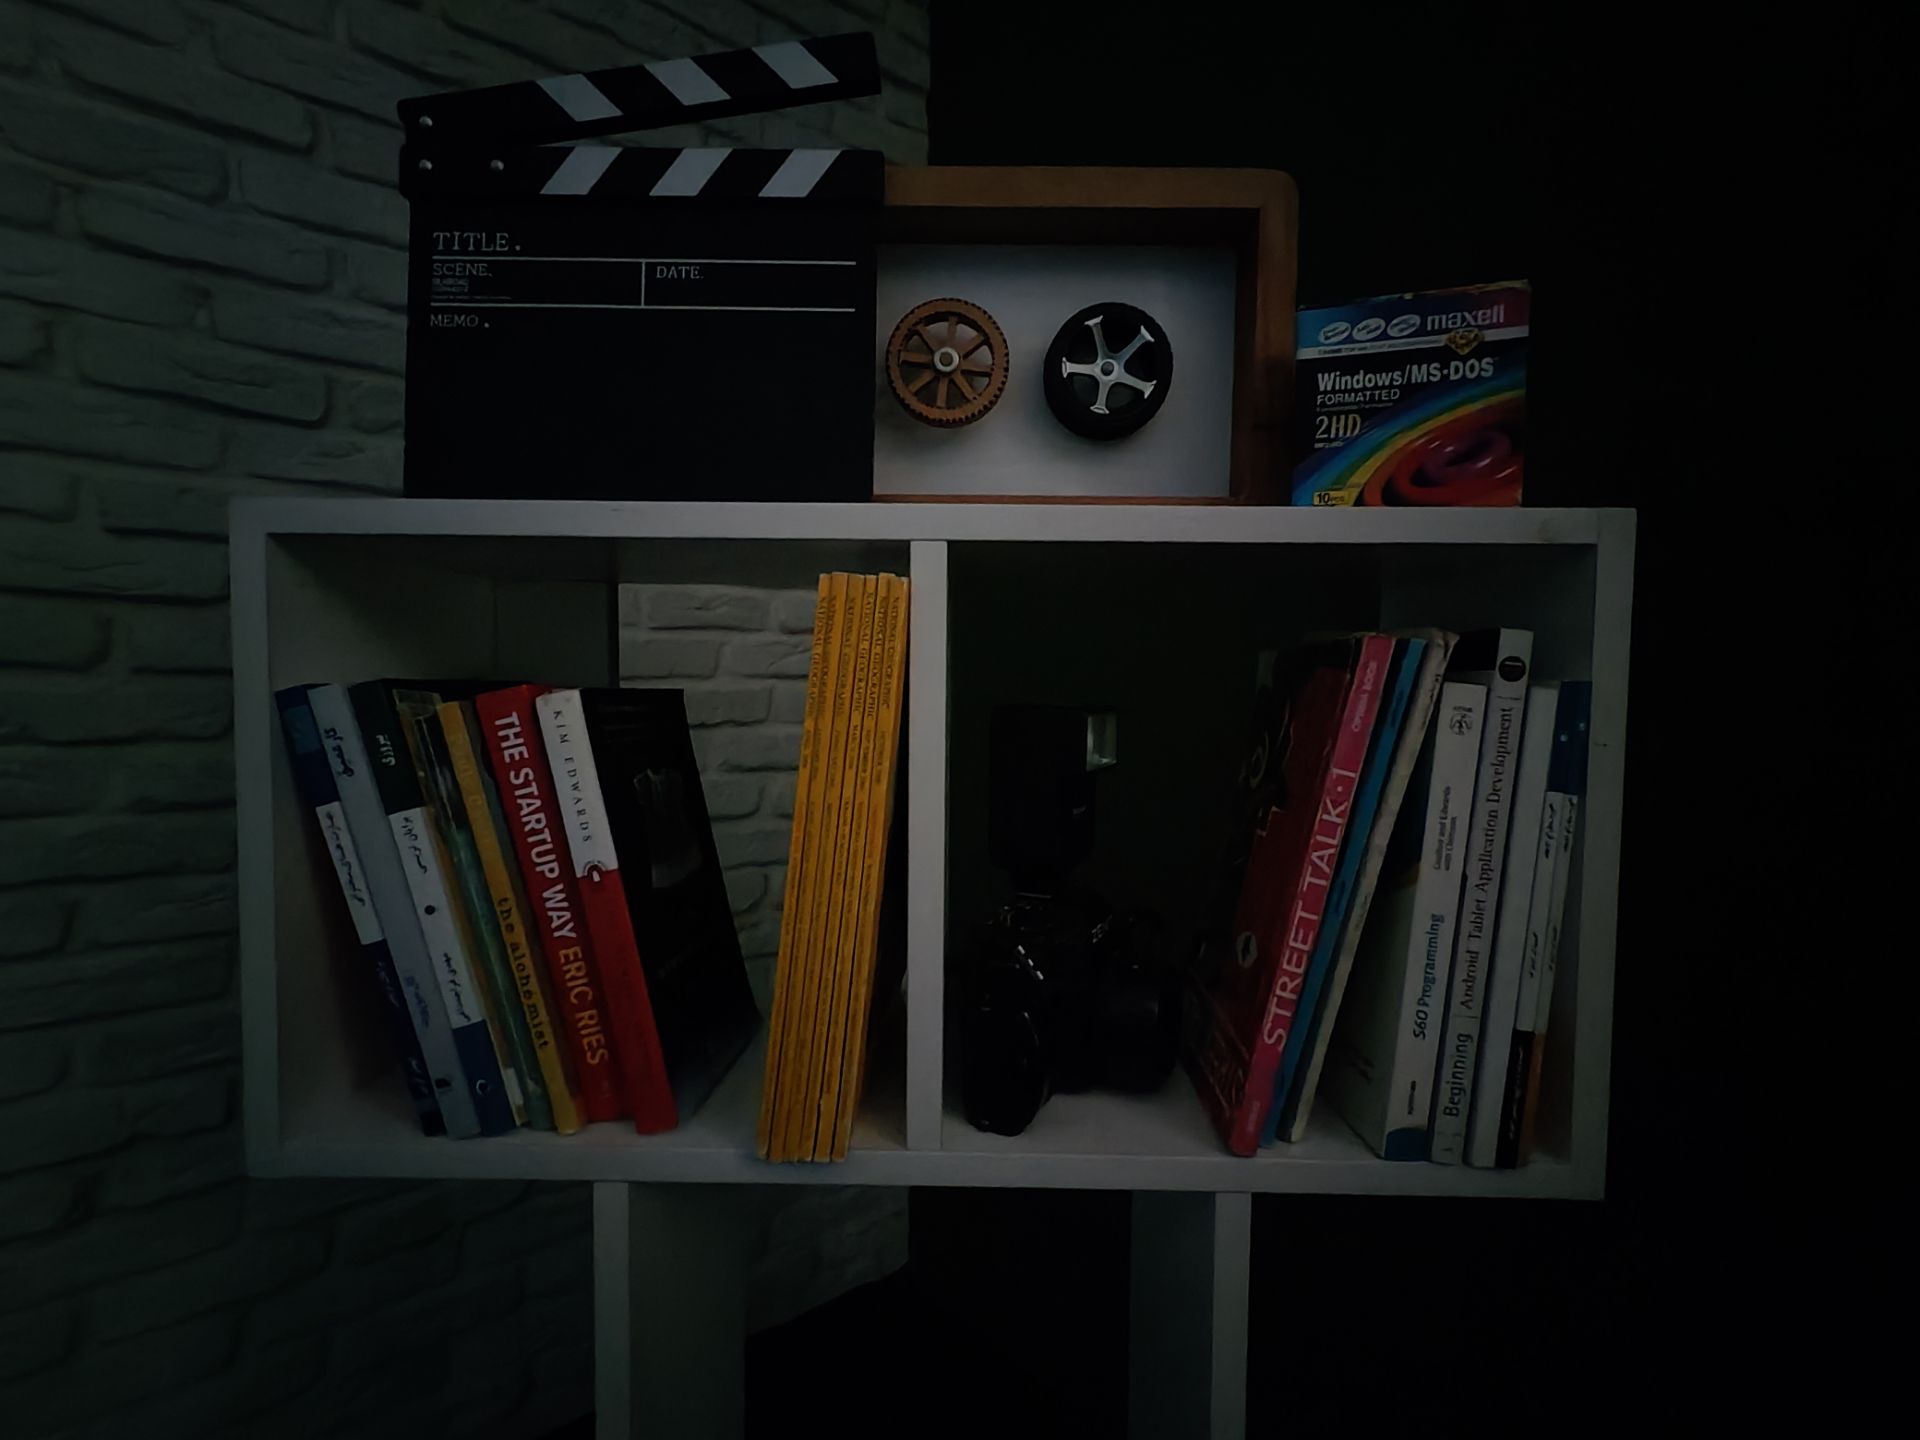 قفسه به همراه تخته کلاپر و چند عدد کتاب